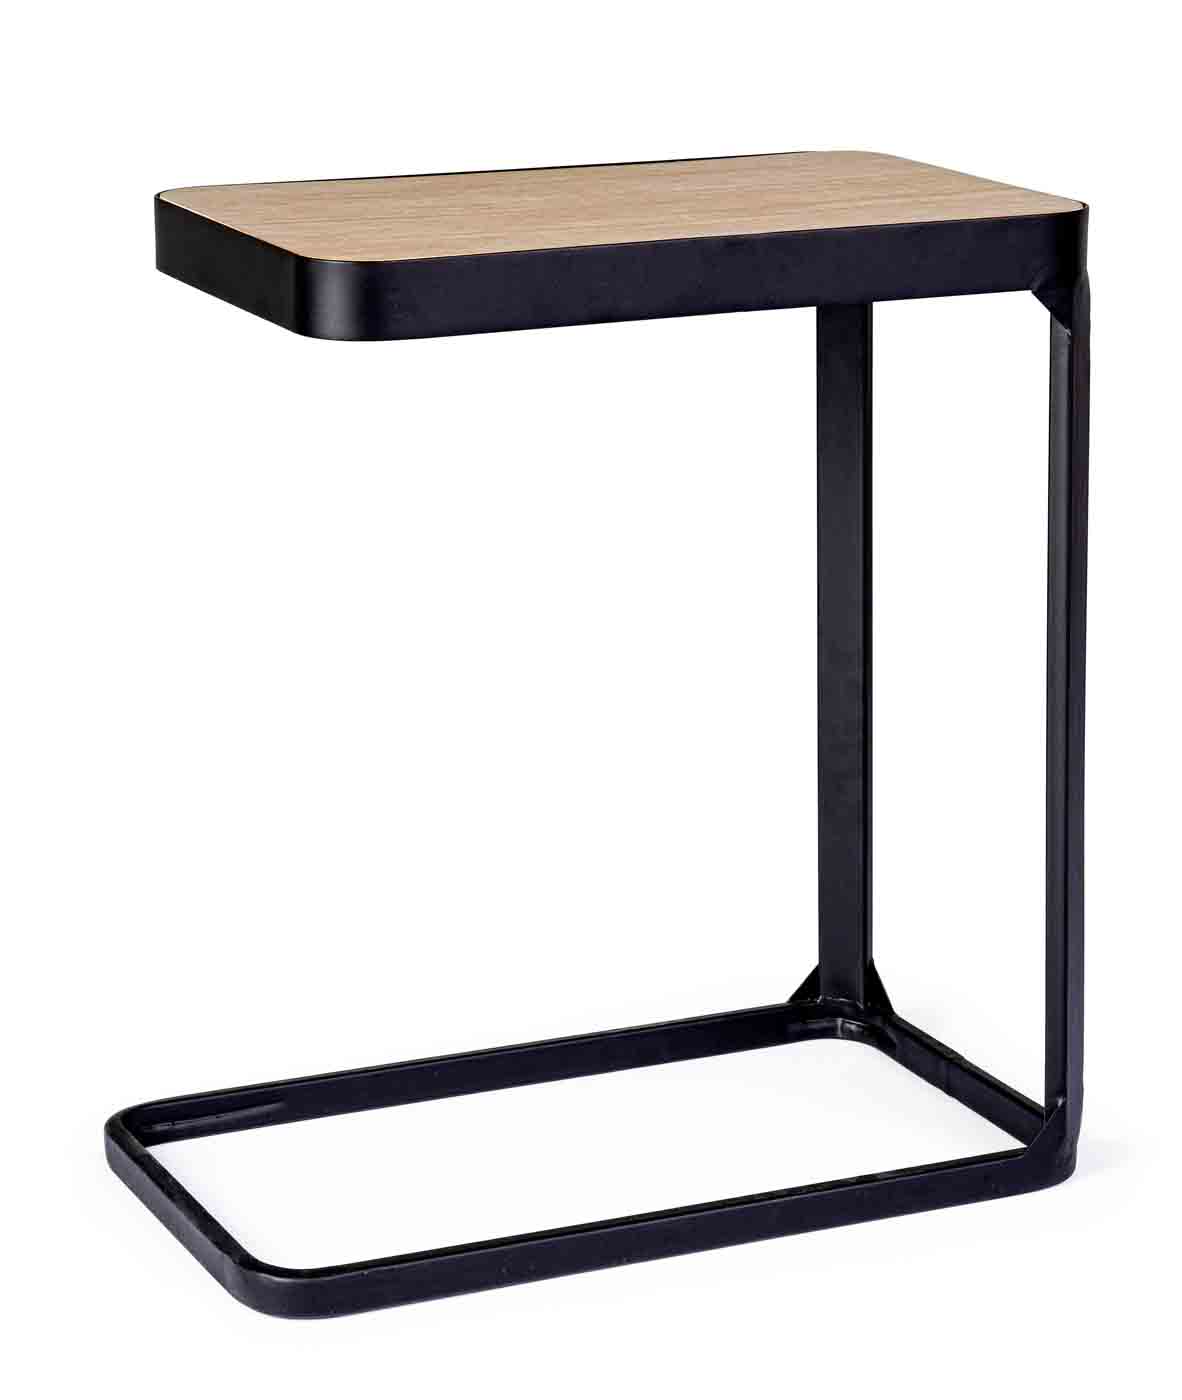 Die Tischplatte des Beistelltisches Everitt wurde aus Tannenholz gefertigt. Das Gestell des Tisches ist aus lackiertem Metall. Die Kombination von Holz und Metall erschafft ein modernes Design.